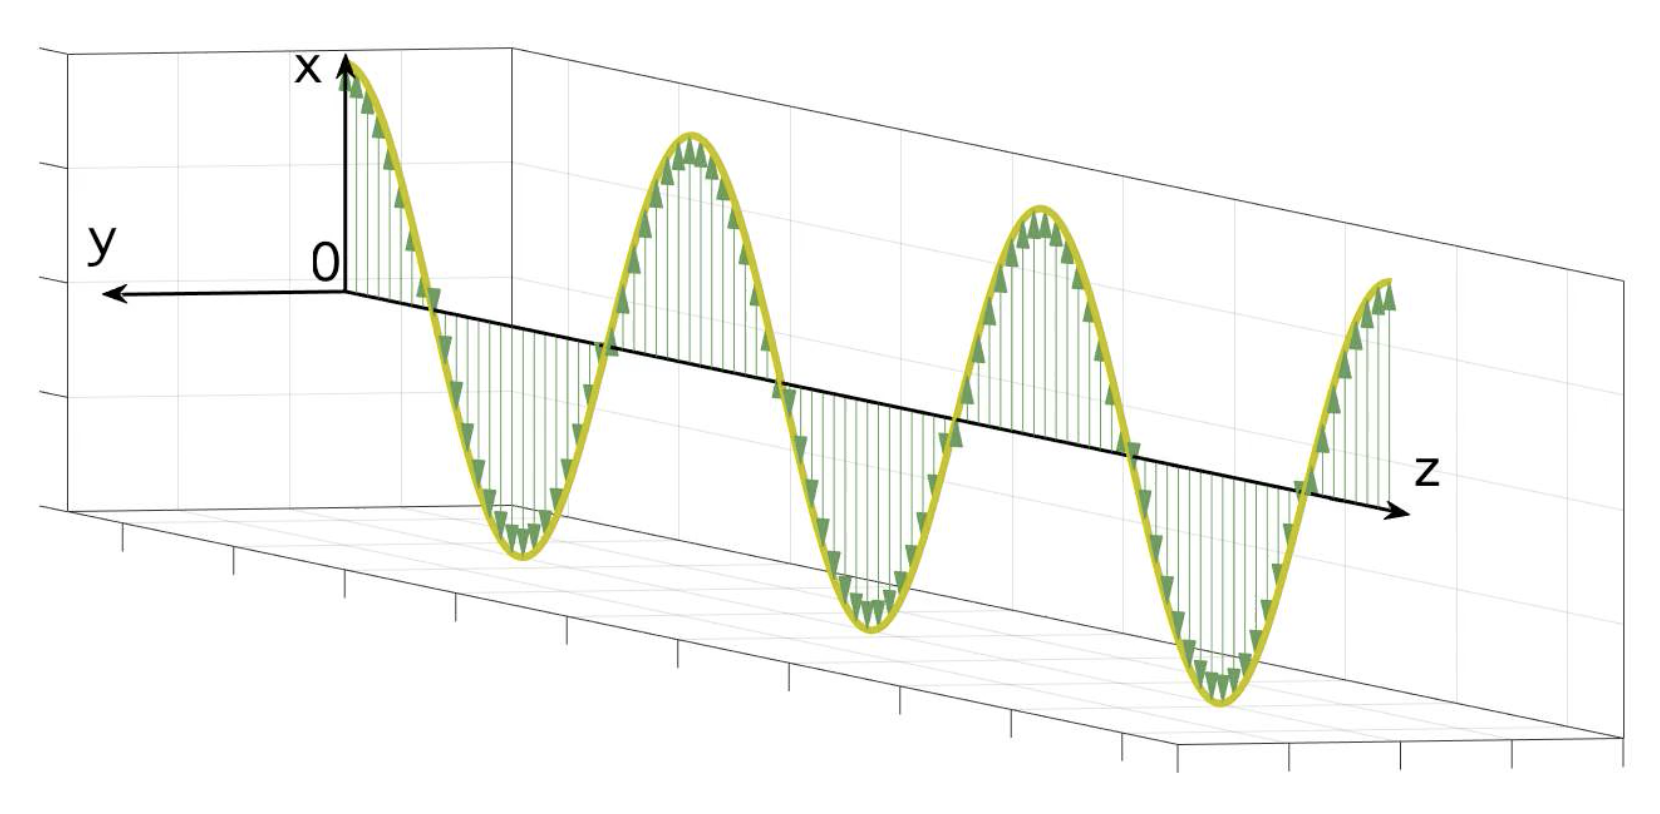 Polarisation rectiligne de la lumière - Le champ électrique \( E \) est dirigé selon l'axe Ox et se déplace selon l'axe Oz - Arrêt sur image